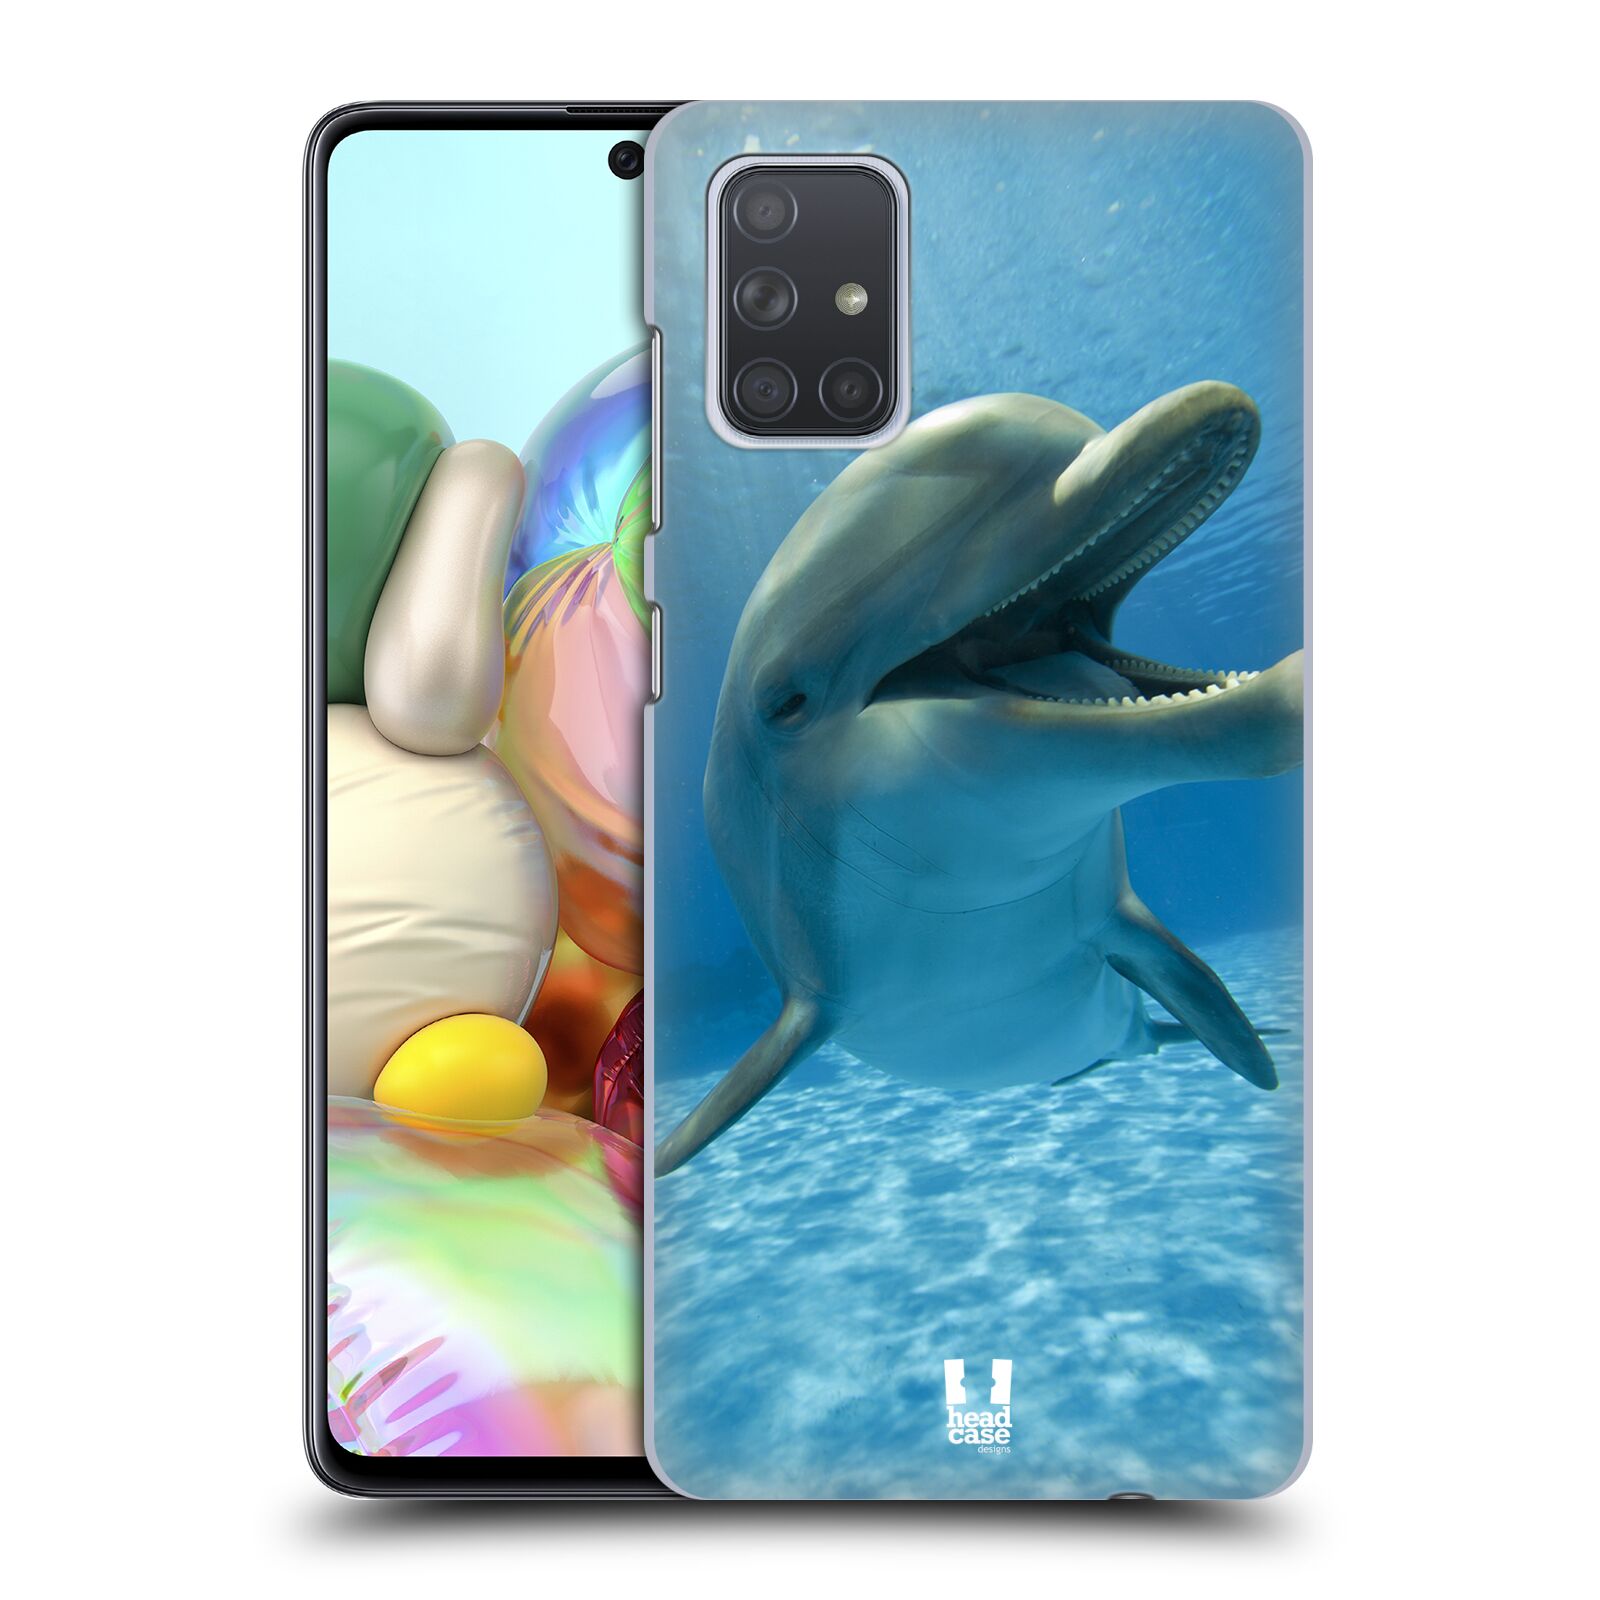 Zadní obal pro mobil Samsung Galaxy A71 - HEAD CASE - Svět zvířat delfín v moři